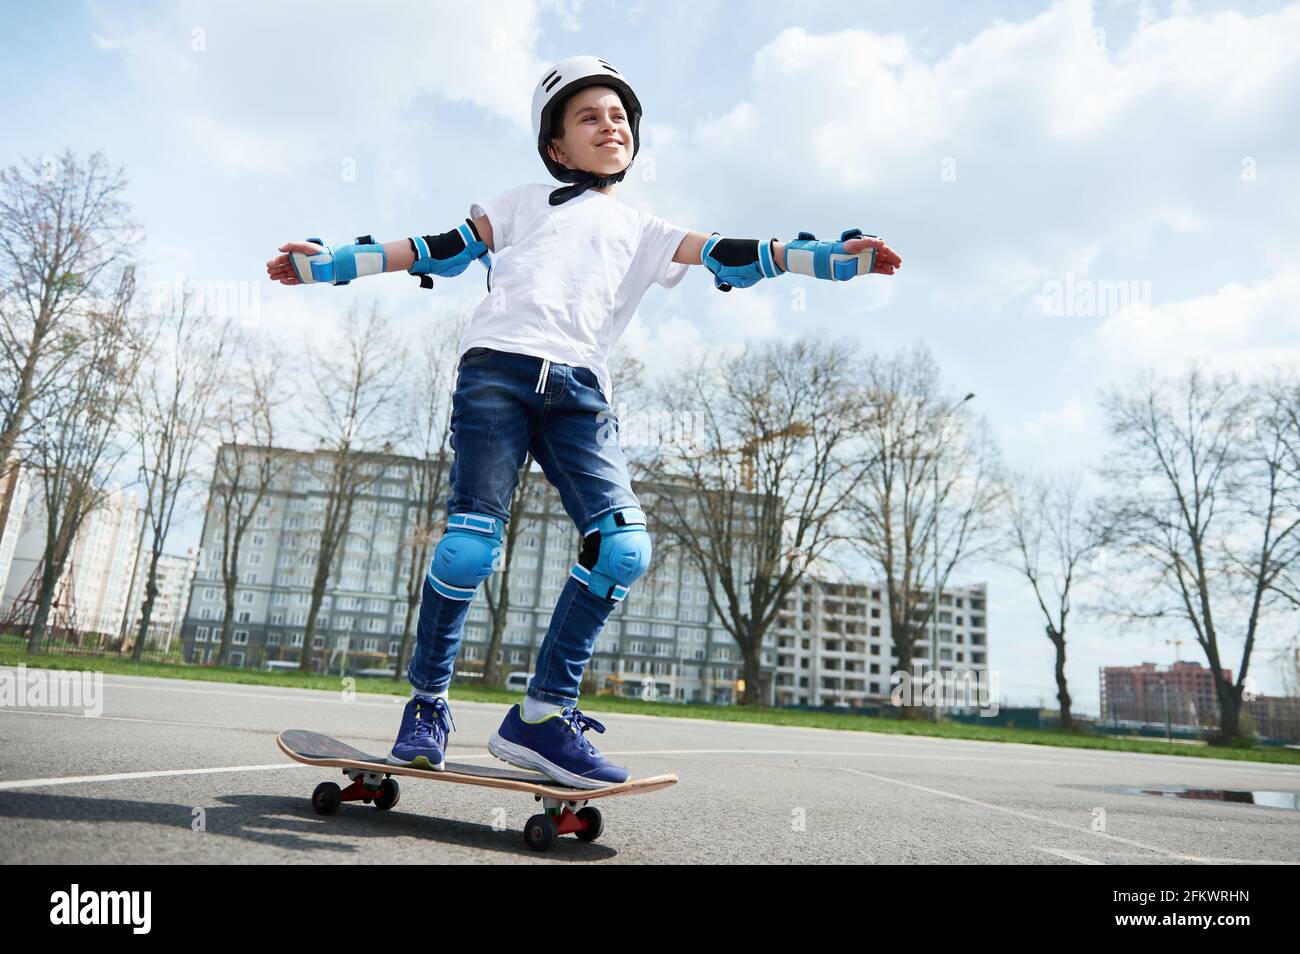 Fröhlich und lächelnd Schuljunge in Schutzkleidung und Helm hält  Balancieren Sie beim Fahren auf einem Skateboard Stockfotografie - Alamy